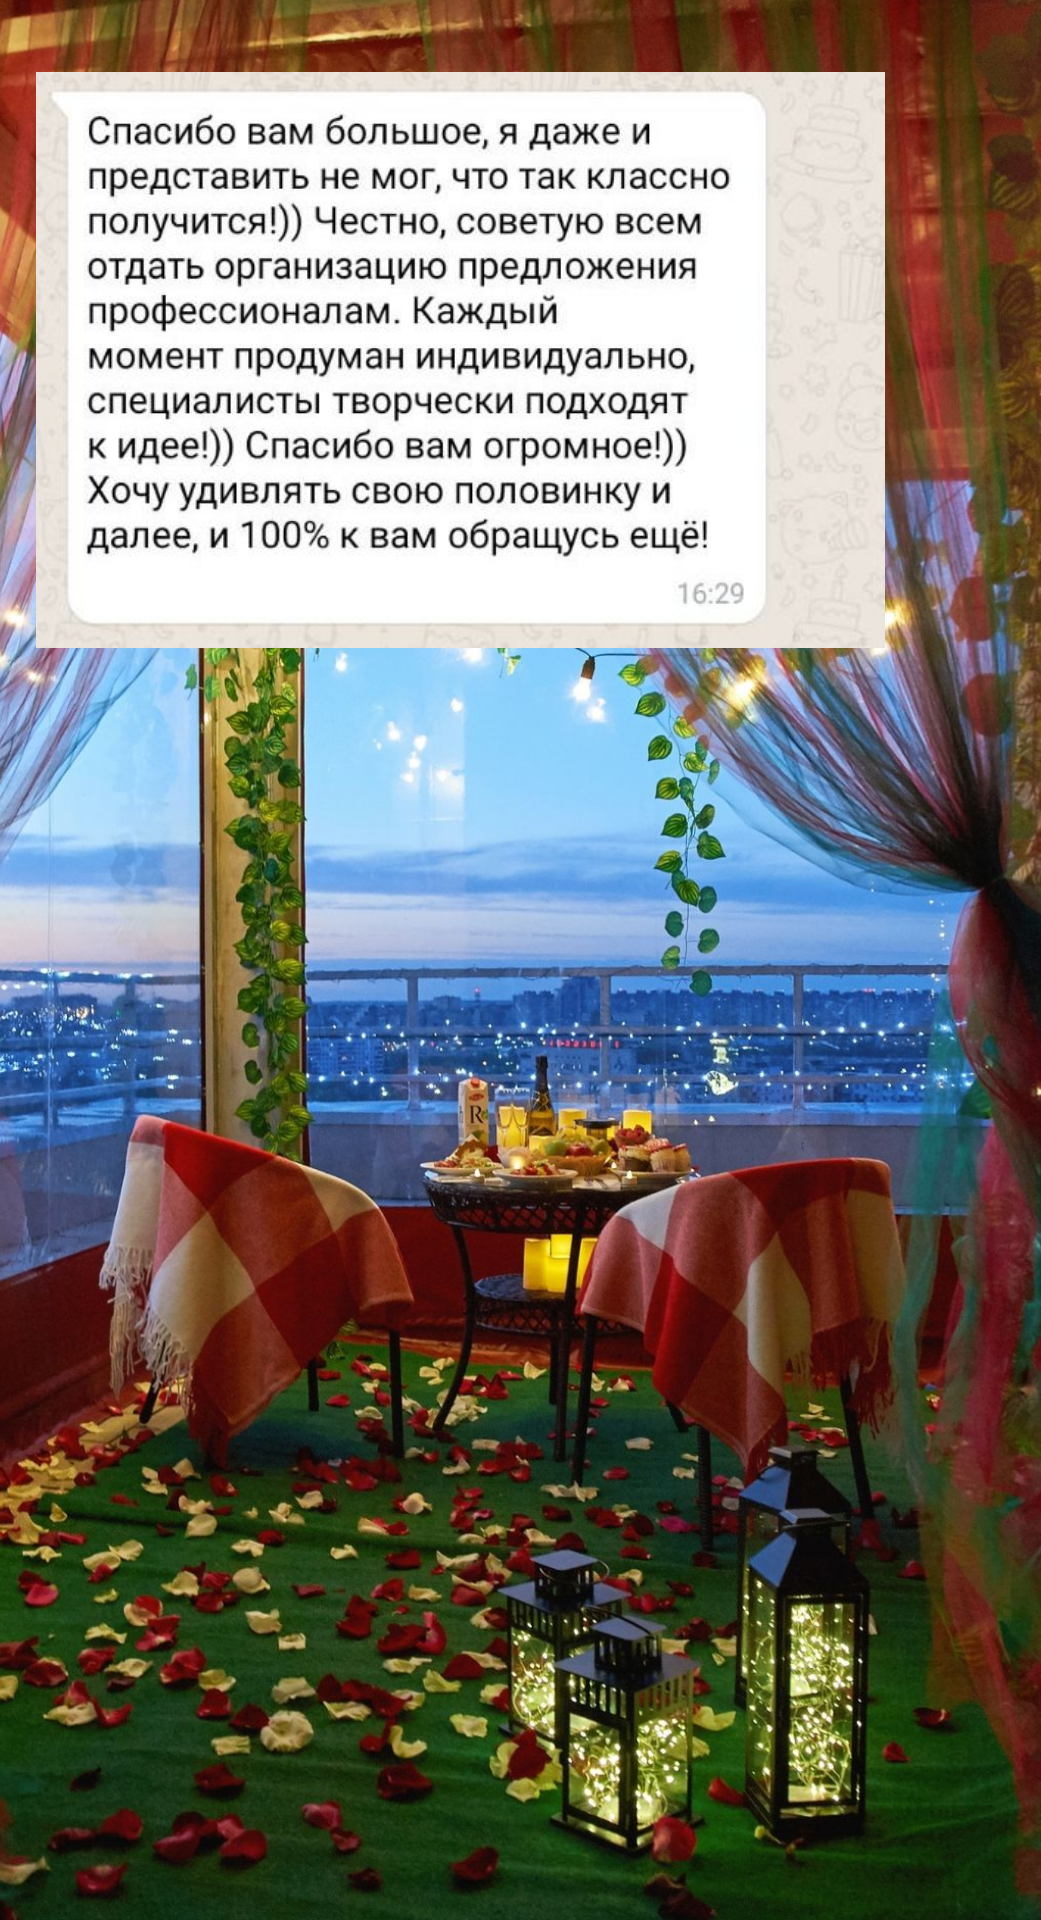 Организация предложения руки и сердца в Челябинске
от компании Pandaevent